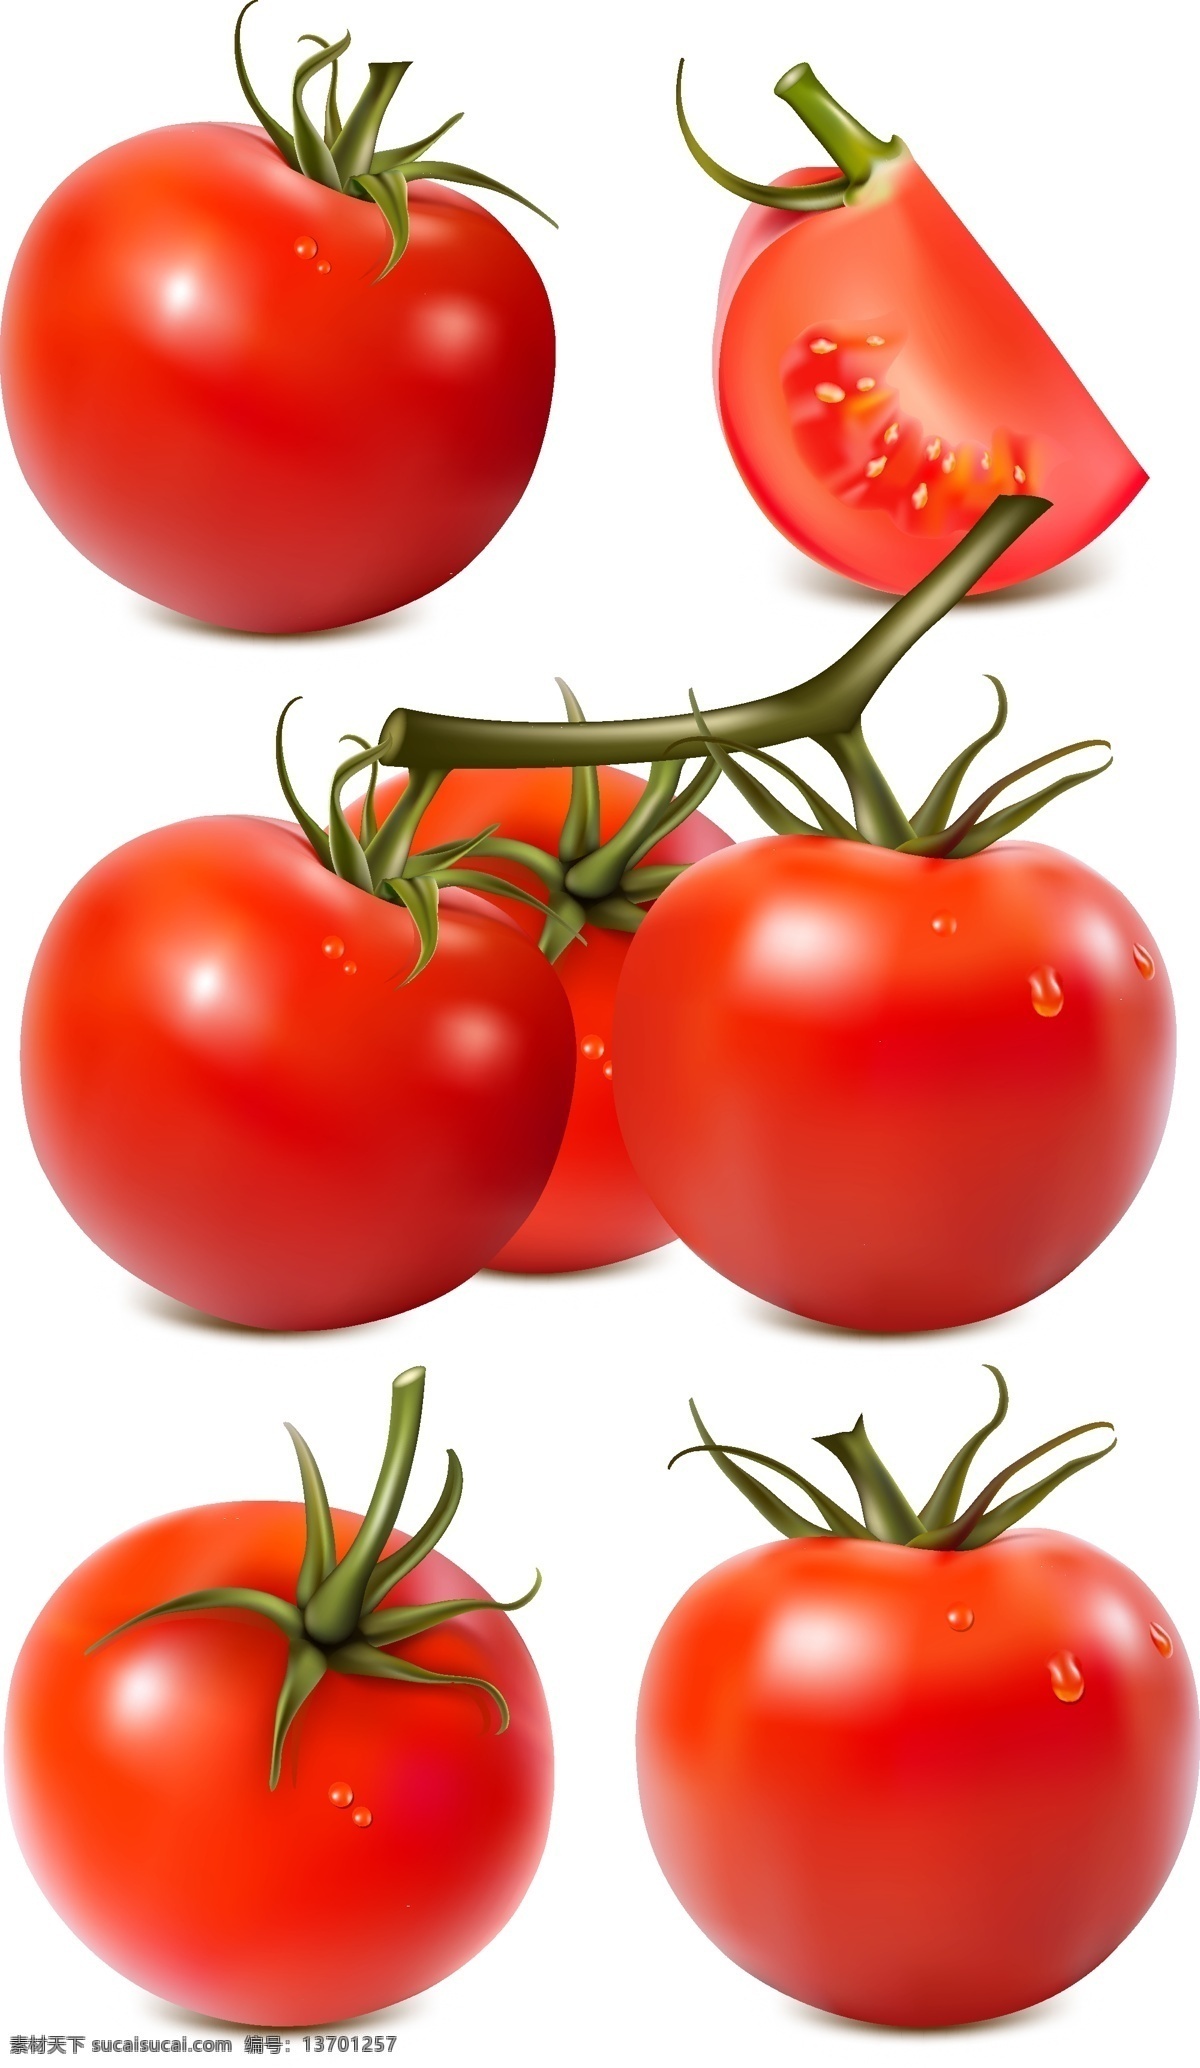 高清 西红柿 矢量图 番茄 西红柿下载 高清西红柿 西红柿矢量 番茄下载 番茄矢量 水果 一半西红柿 一半番茄 蔬菜水果 生物世界 蔬菜